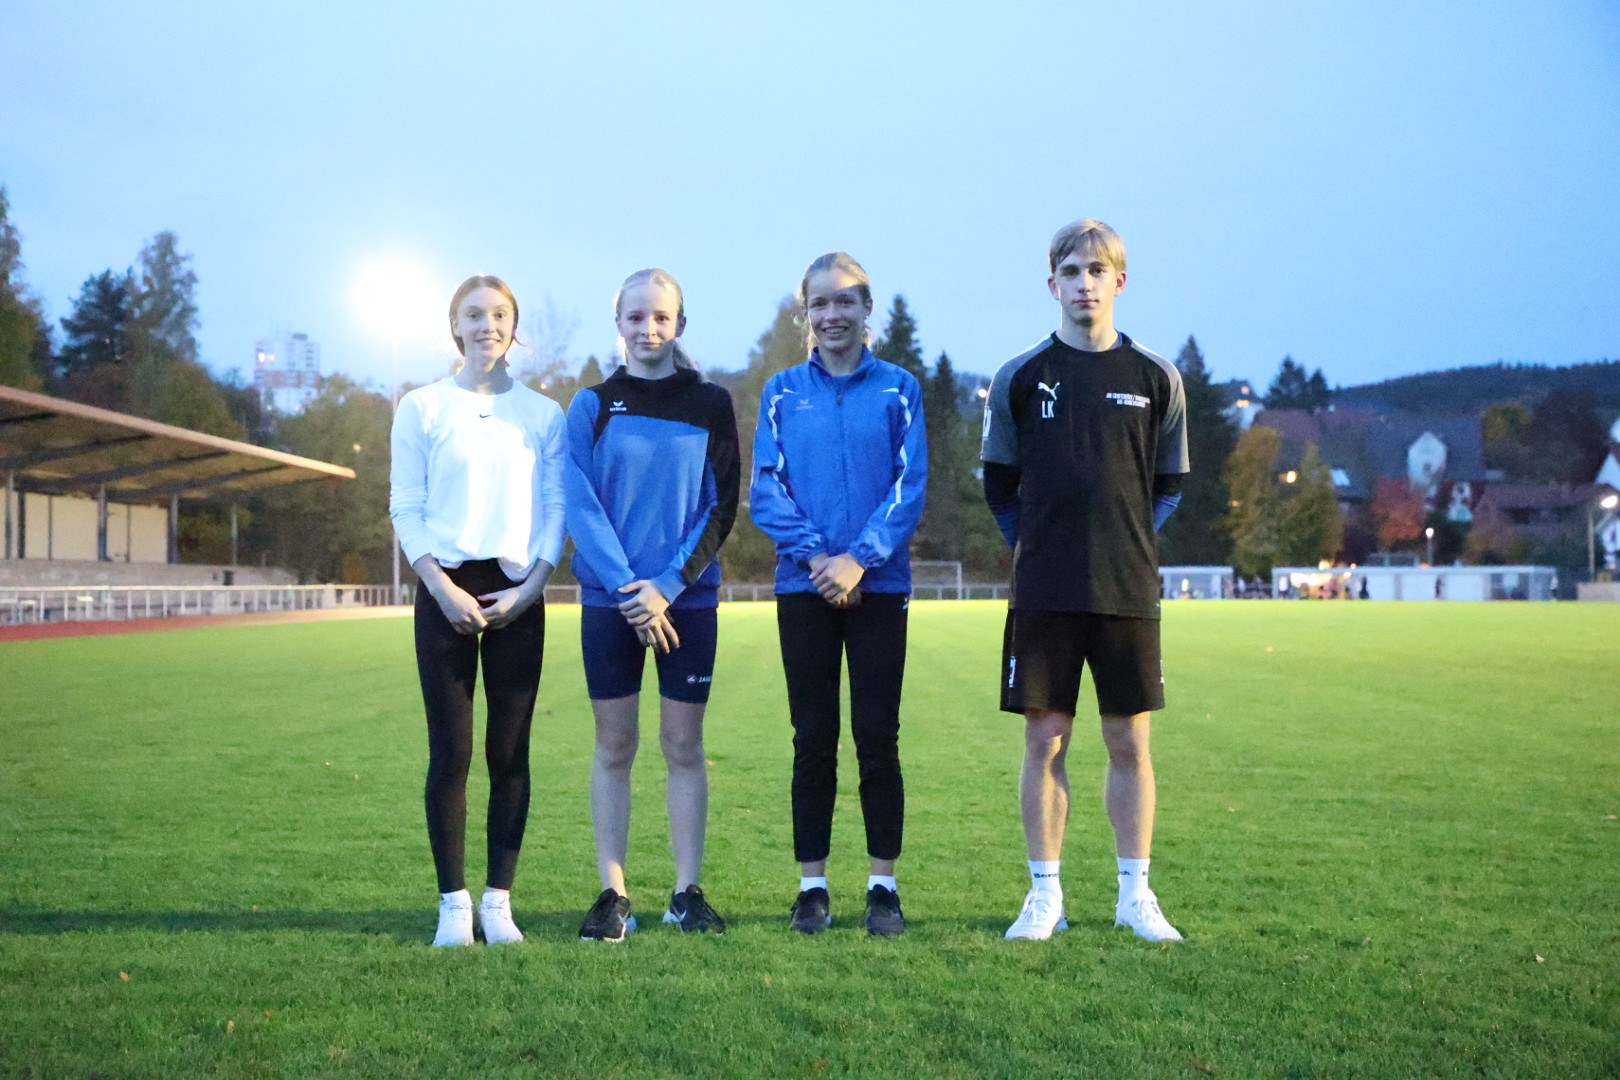  Die LG-Sportler (von links):  Bille Marburger (weibliche Jugend U18), Merle Neumann (W13), Hanna Knebel (W13), Lukas Kasusch (männliche Jugend U18)  